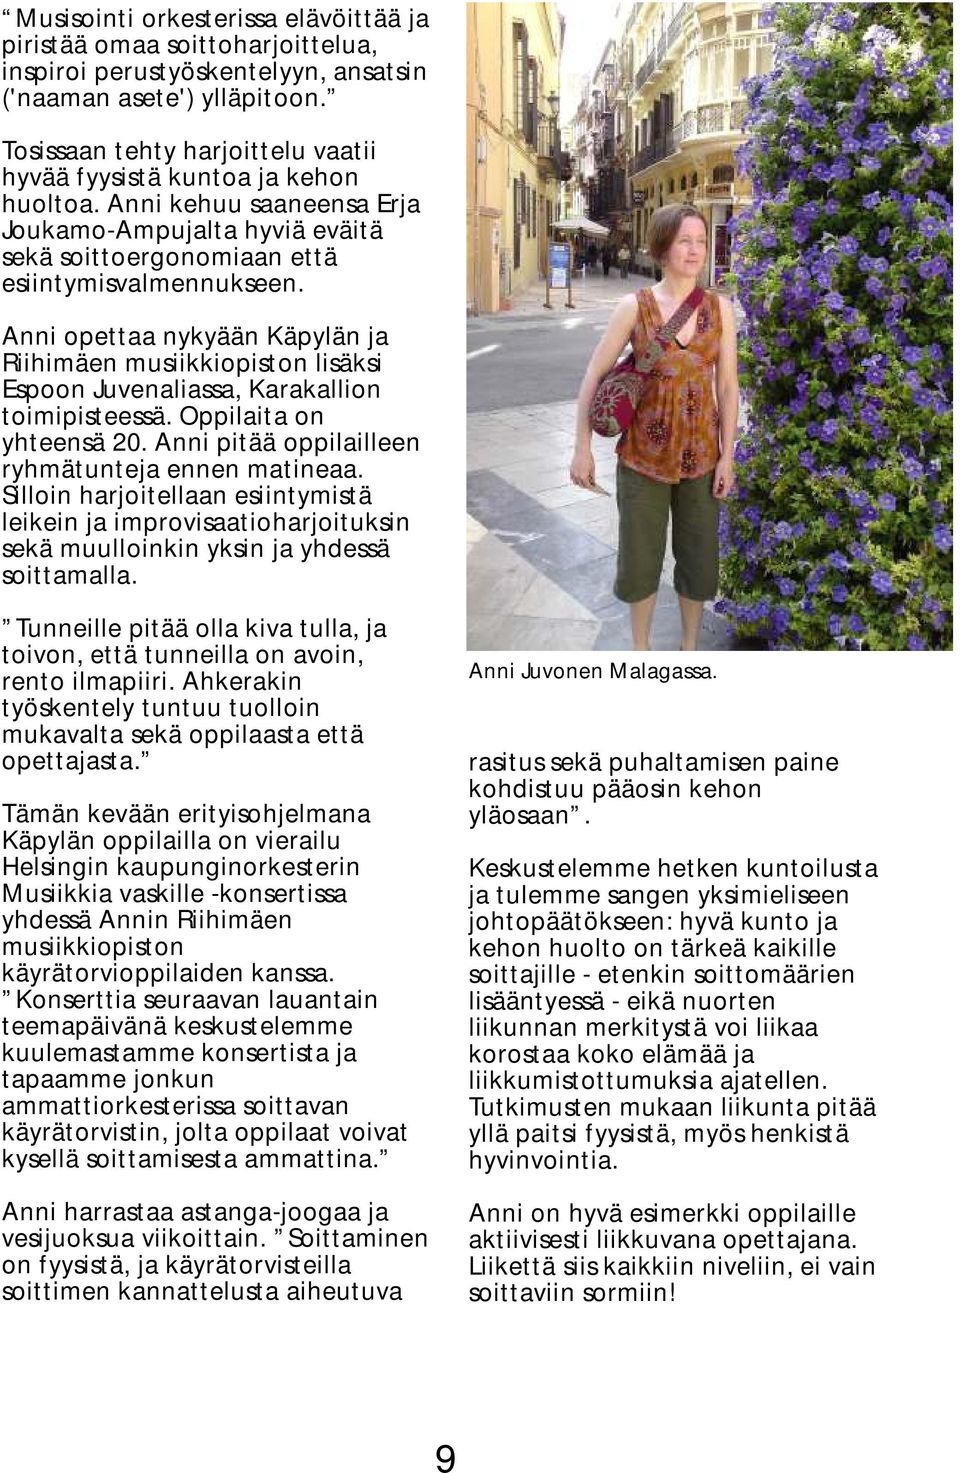 Anni opettaa nykyään Käpylän ja Riihimäen musiikkiopiston lisäksi Espoon Juvenaliassa, Karakallion toimipisteessä. Oppilaita on yhteensä 20. Anni pitää oppilailleen ryhmätunteja ennen matineaa.